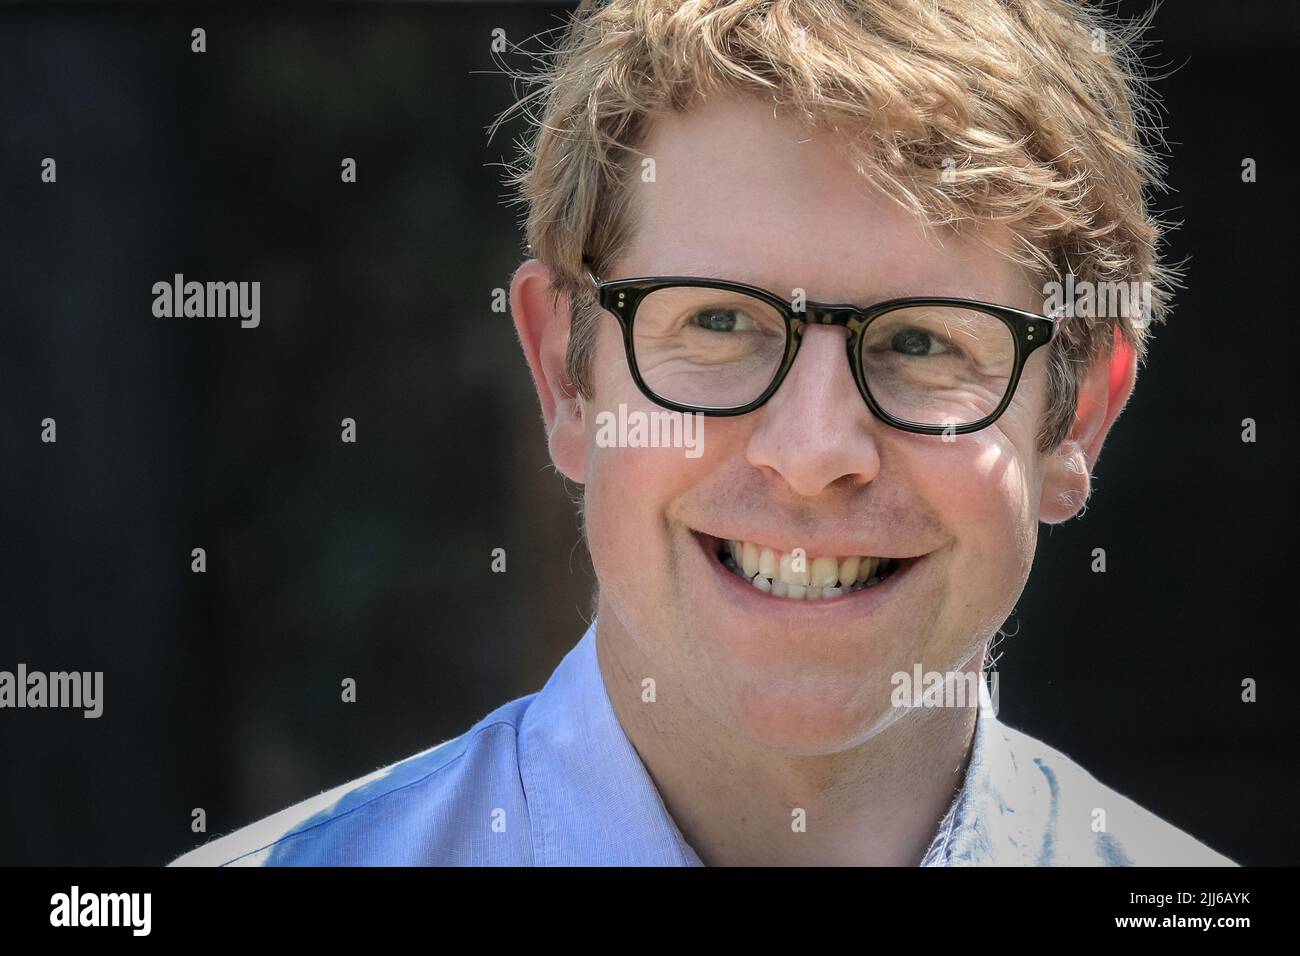 Josh Widdicombe, Comedian und TV-Moderator, lächelnd, Nahaufnahme des Gesichts Stockfoto